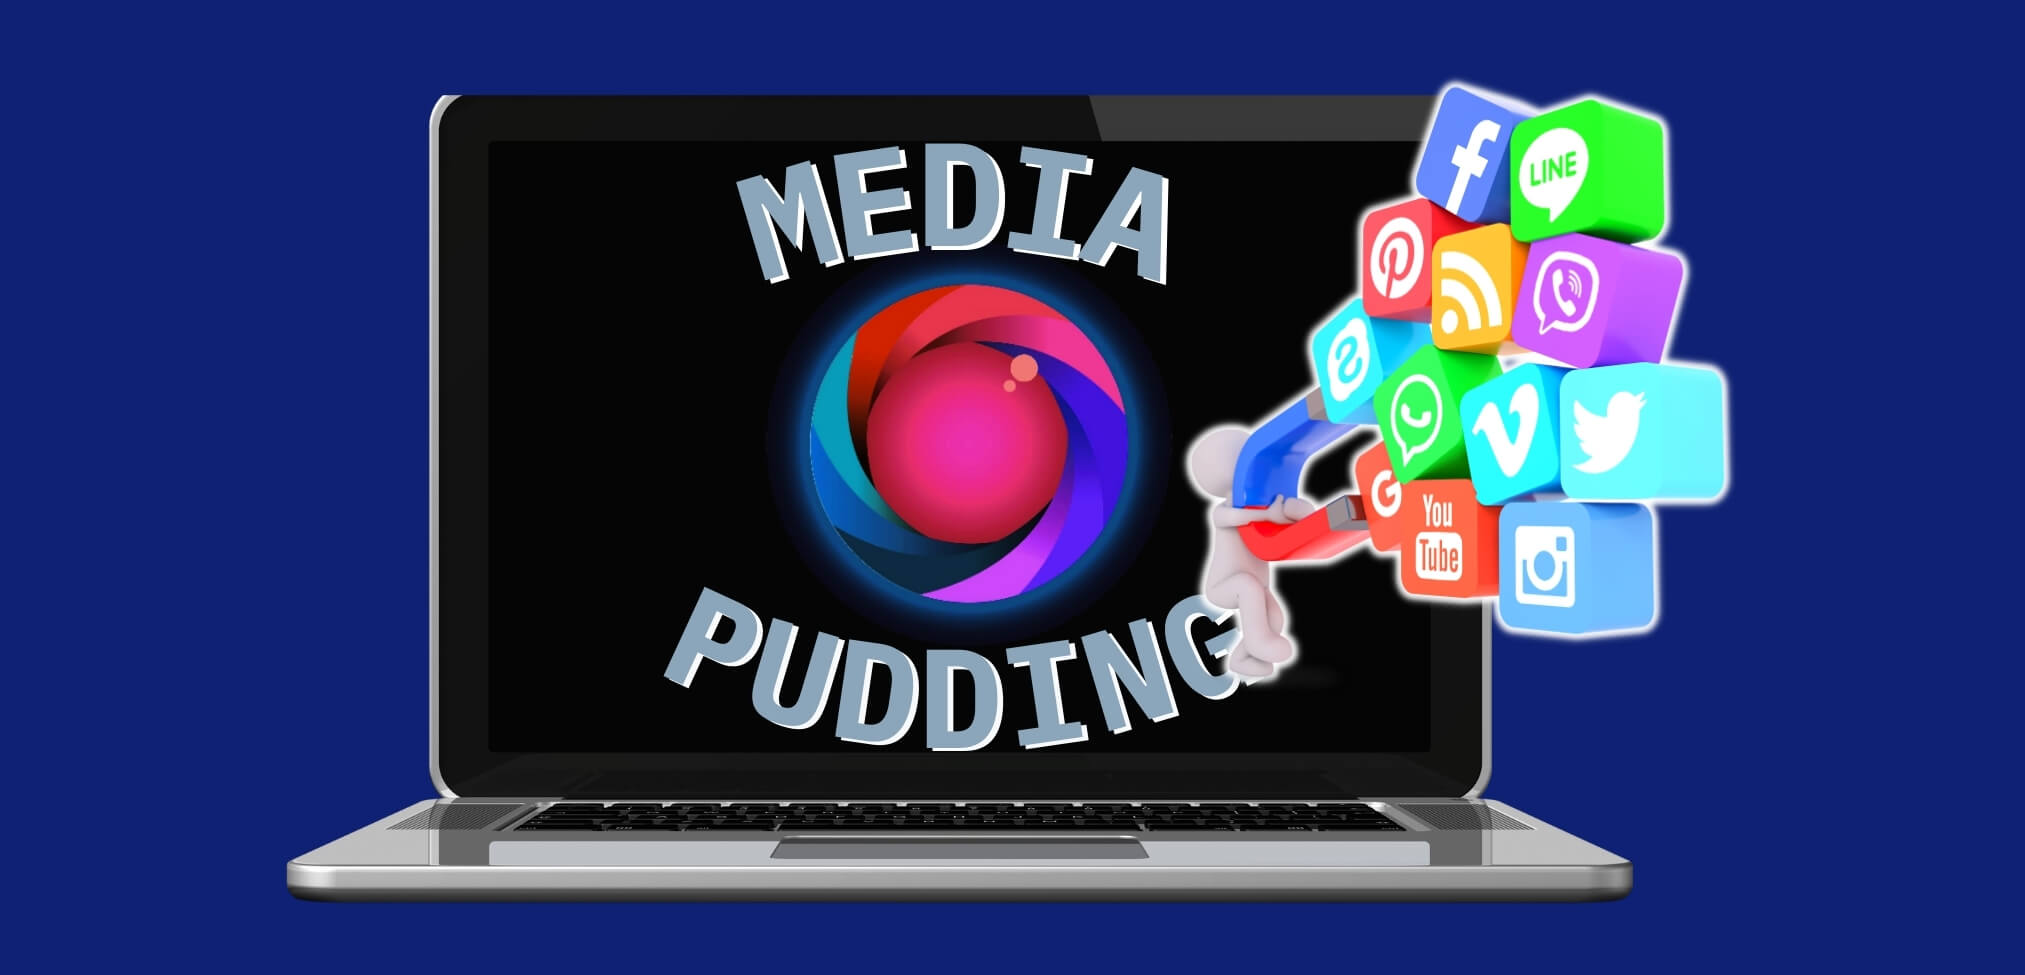 Media pudding header